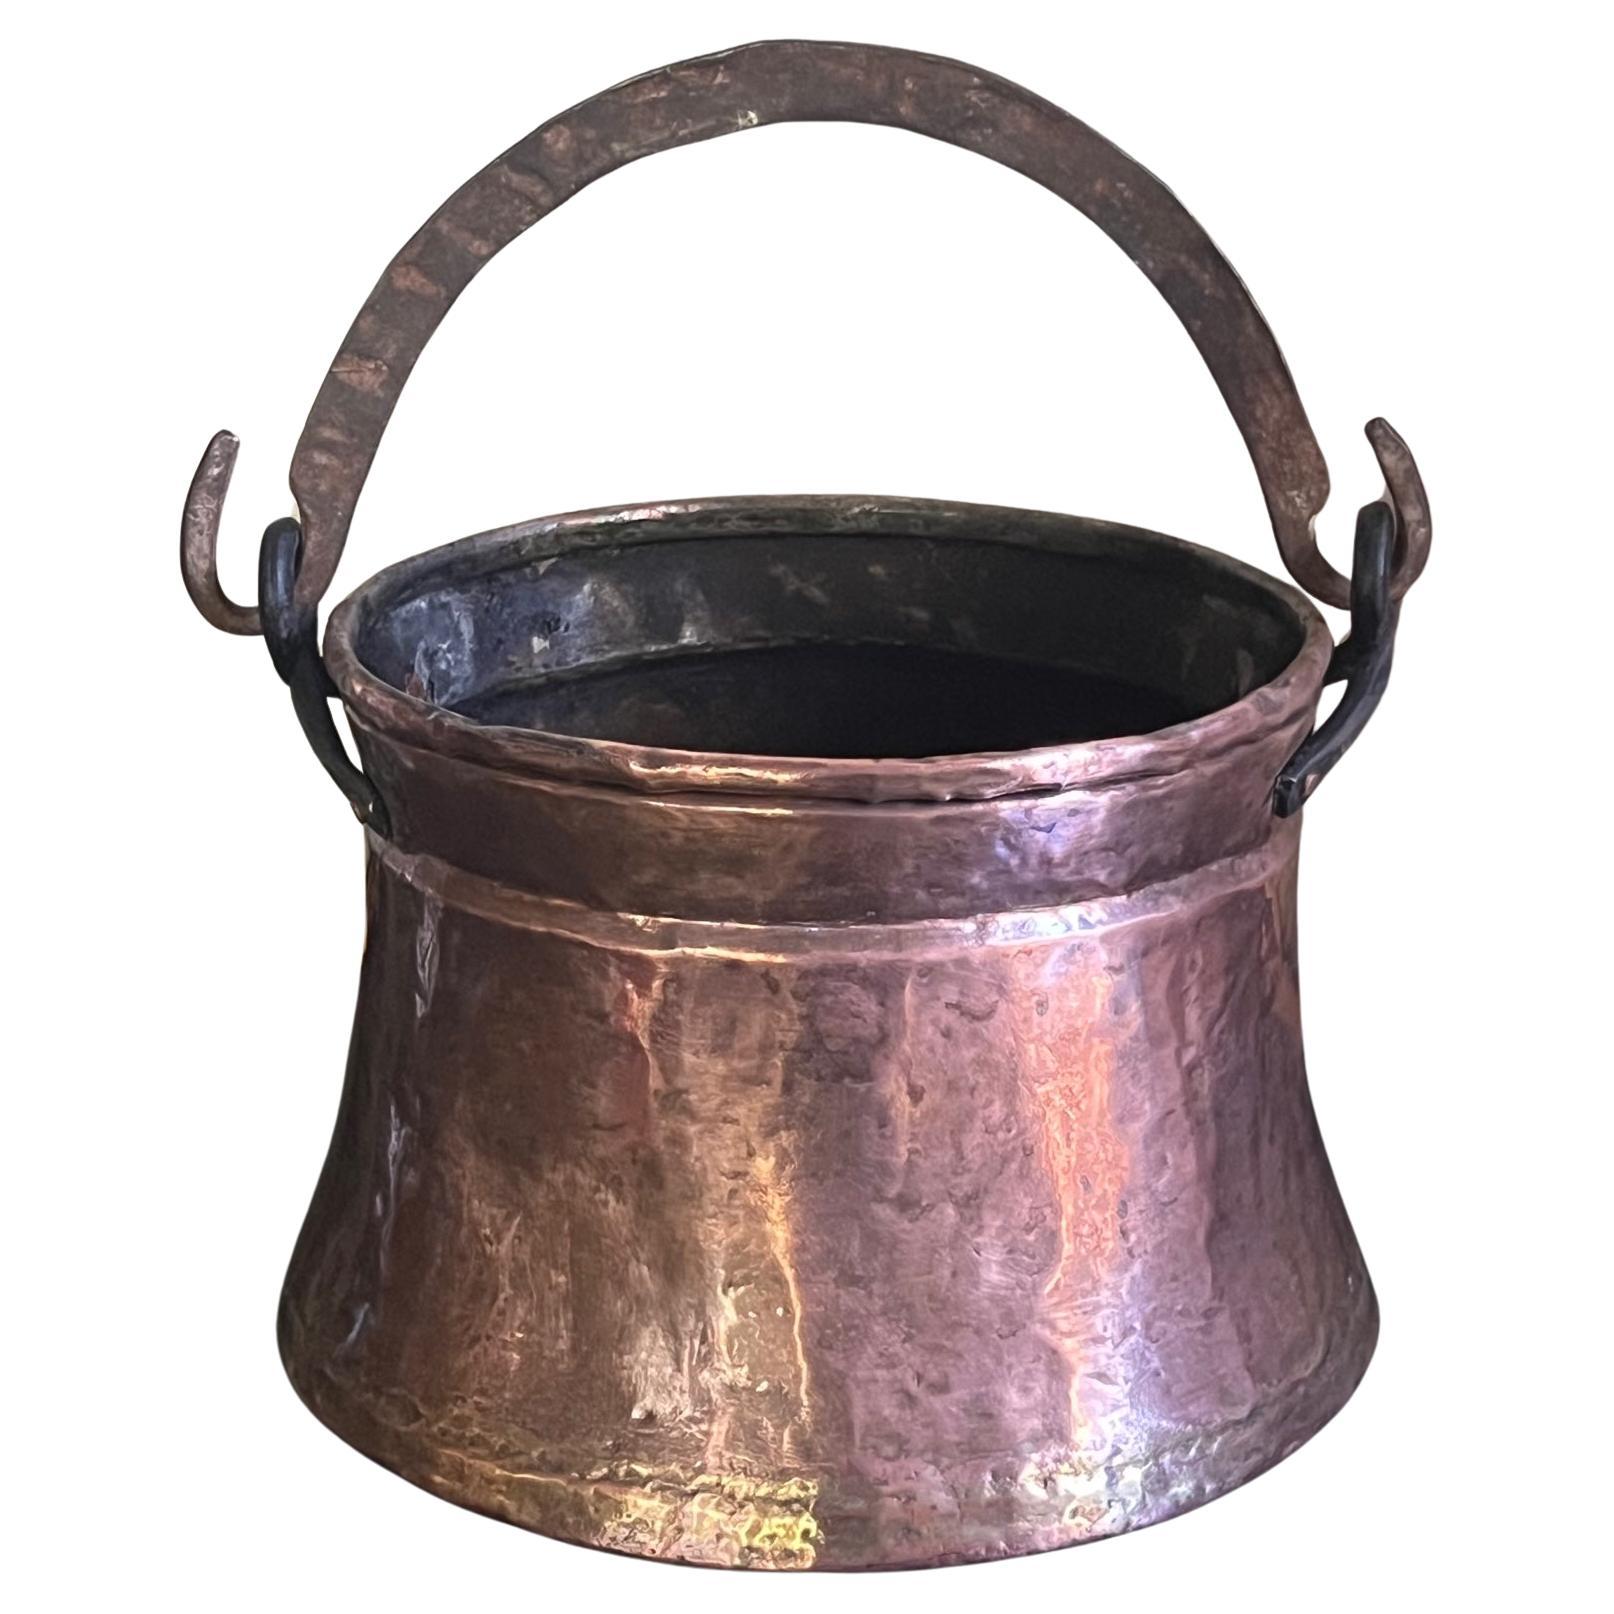 Antique Copper Candy Pot, Copper Candy Kettle, Small Thick Copper Pot,  Hanging Pot, Kitchen Decor, Vintage Copper Pot Iron Handle, Cauldron